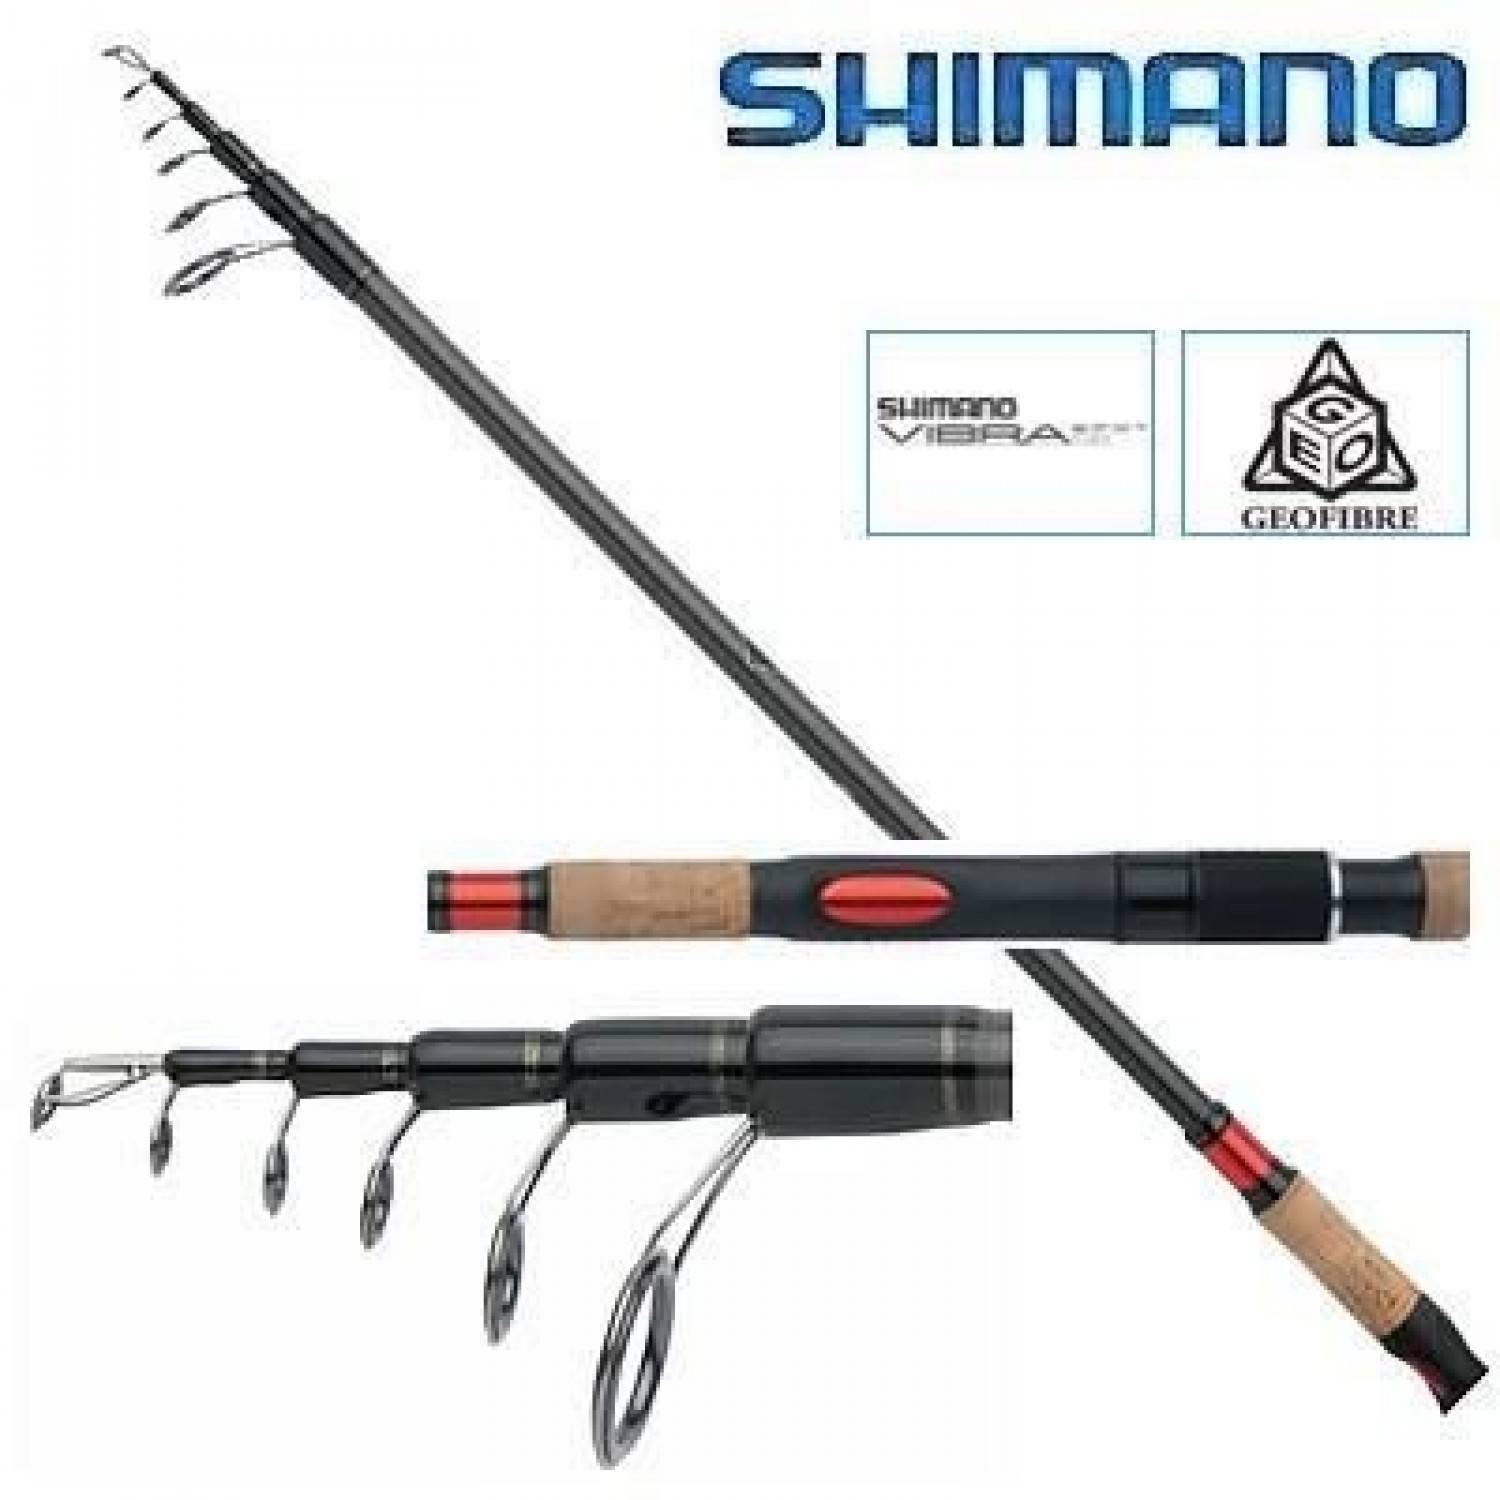 Спиннинг шимано (для джига, твичинга), отзывы о лучших моделях бренда shimano